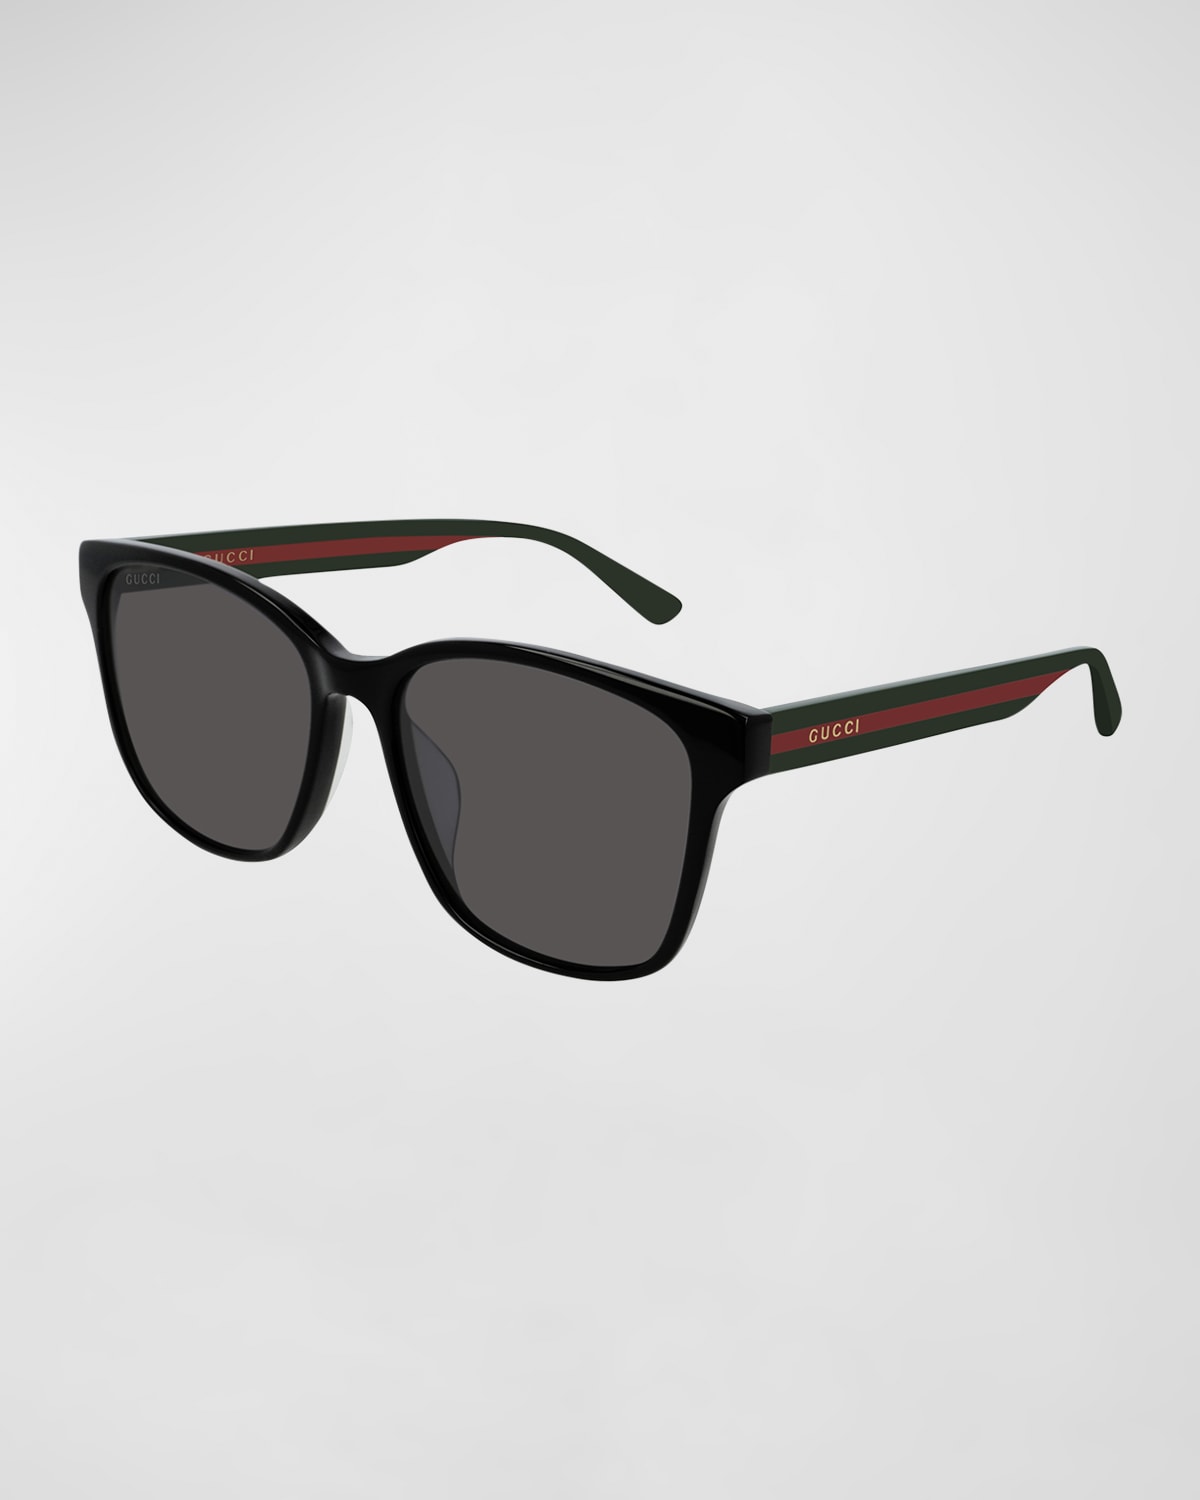 Gucci Mens Sunglasses | Neiman Marcus